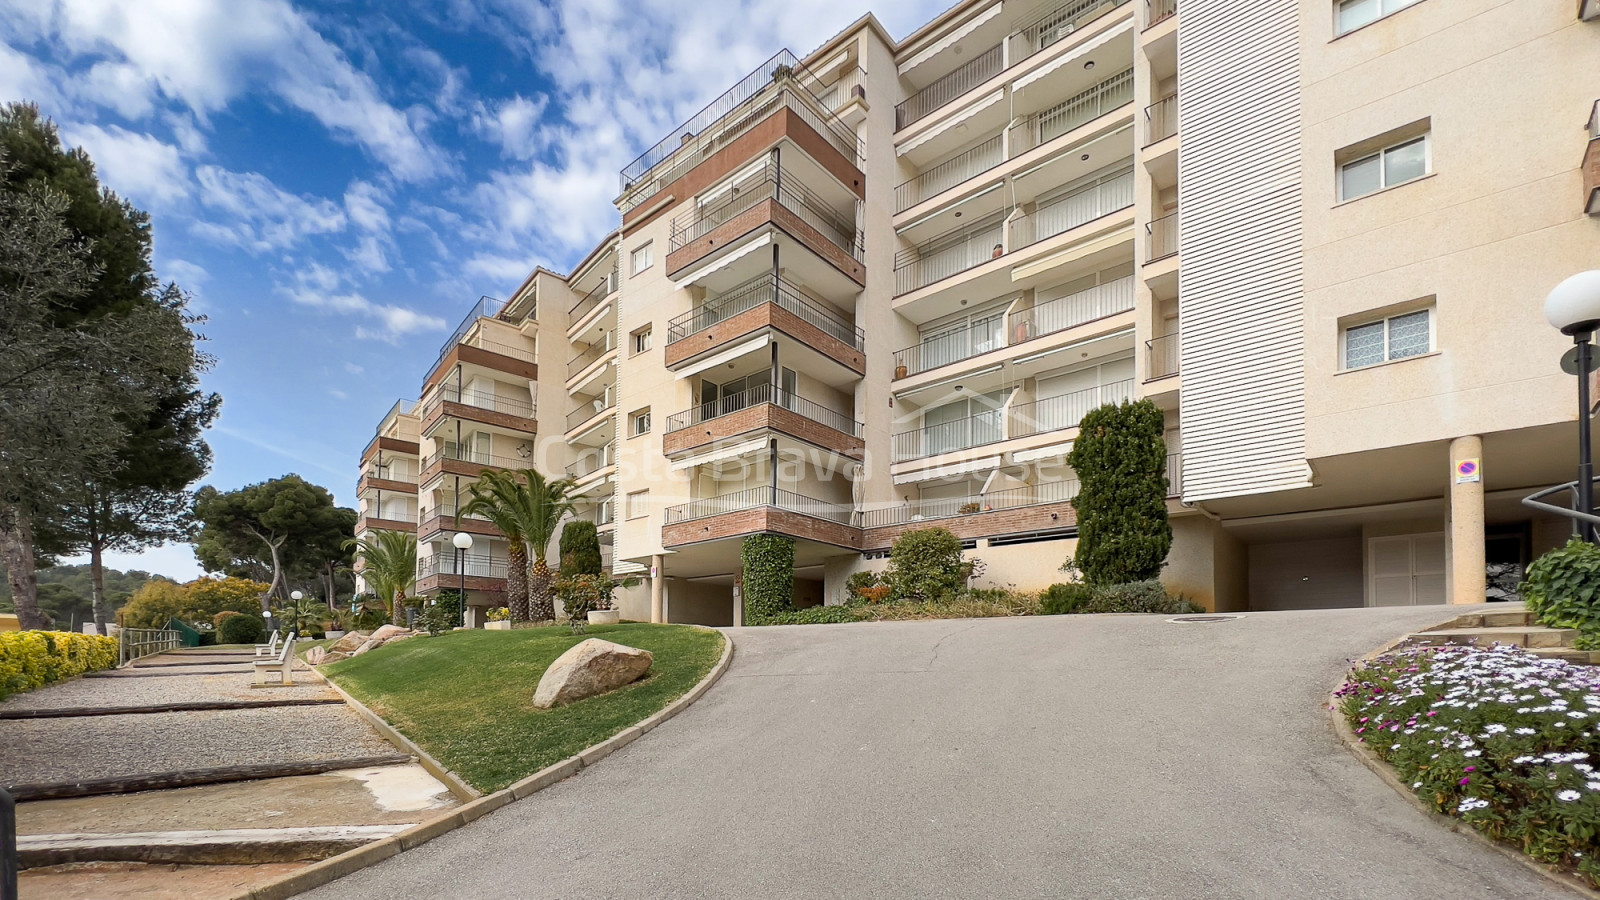 Apartamento Tamariu Costa Brava a 850m playa. Piscina, terraza y parking